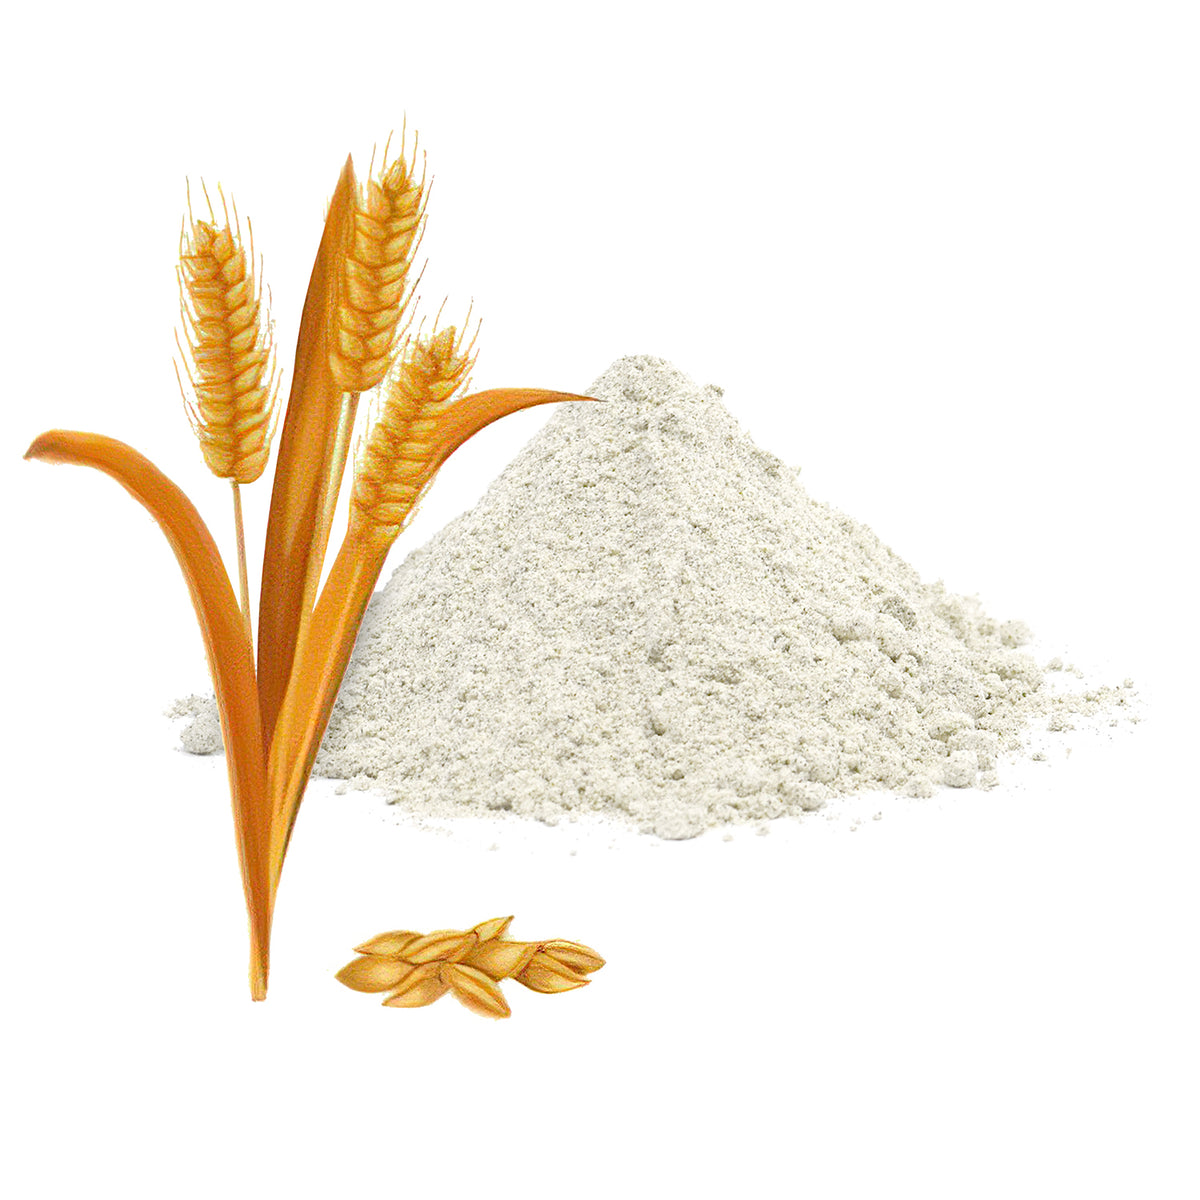 Barley Flour - Jau Ka Atta 800g - Organic & Unadulterated, Wholesome, Low-Gluten & High Fibre | Hulled Barley /Jau Flour